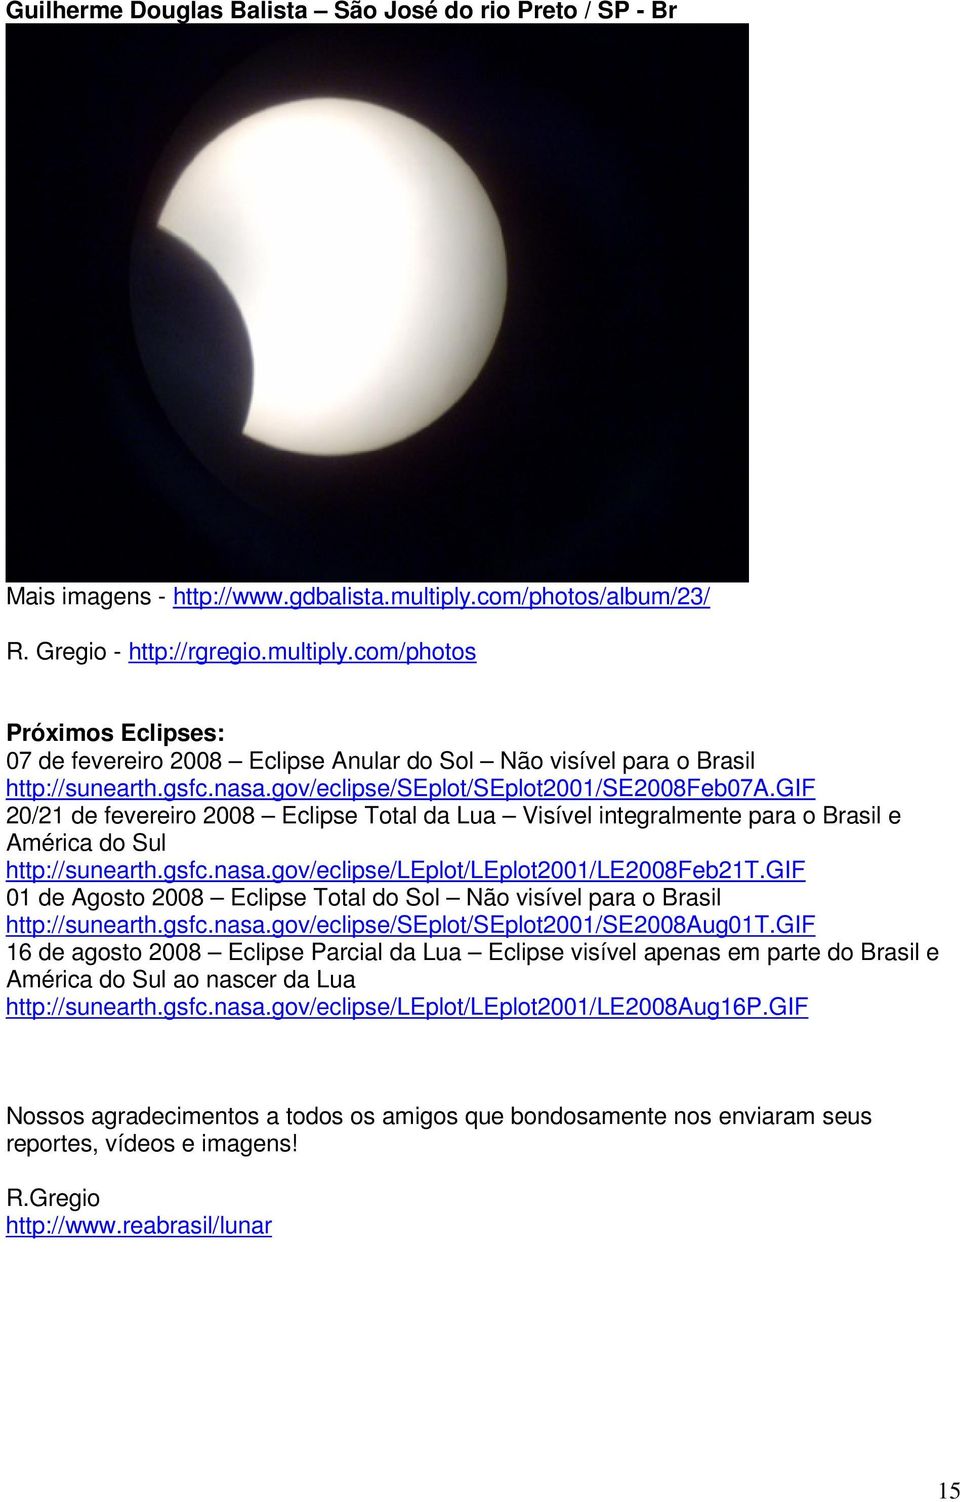 gov/eclipse/seplot/seplot2001/se2008feb07a.gif 20/21 de fevereiro 2008 Eclipse Total da Lua Visível integralmente para o Brasil e América do Sul http://sunearth.gsfc.nasa.